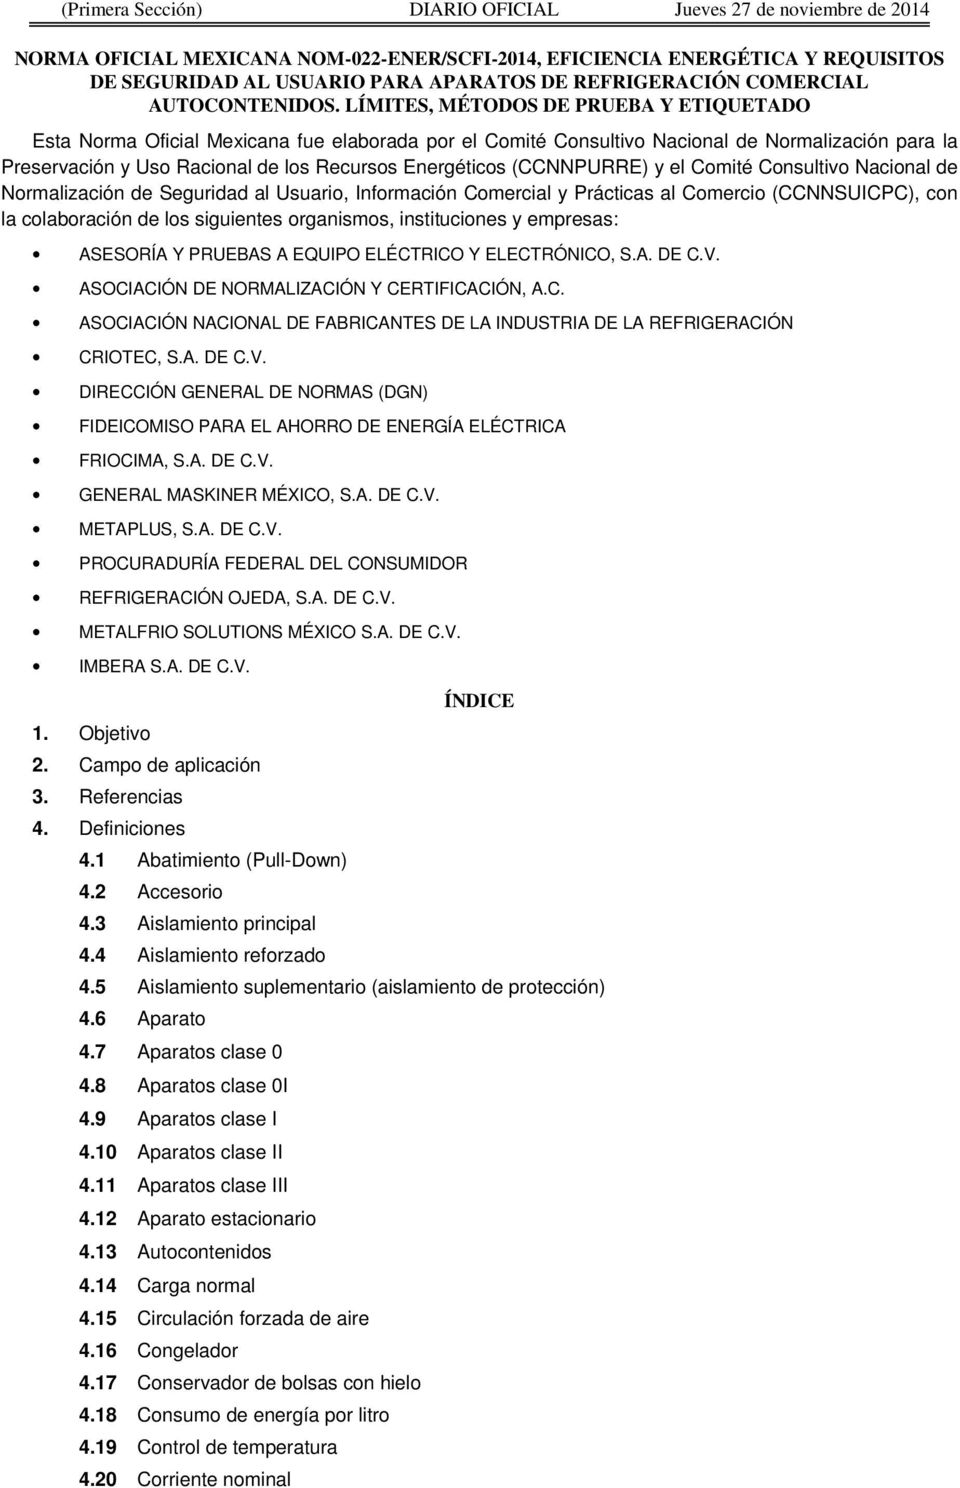 LÍMITES, MÉTODOS DE PRUEBA Y ETIQUETADO Esta Norma Oficial Mexicana fue elaborada por el Comité Consultivo Nacional de Normalización para la Preservación y Uso Racional de los Recursos Energéticos